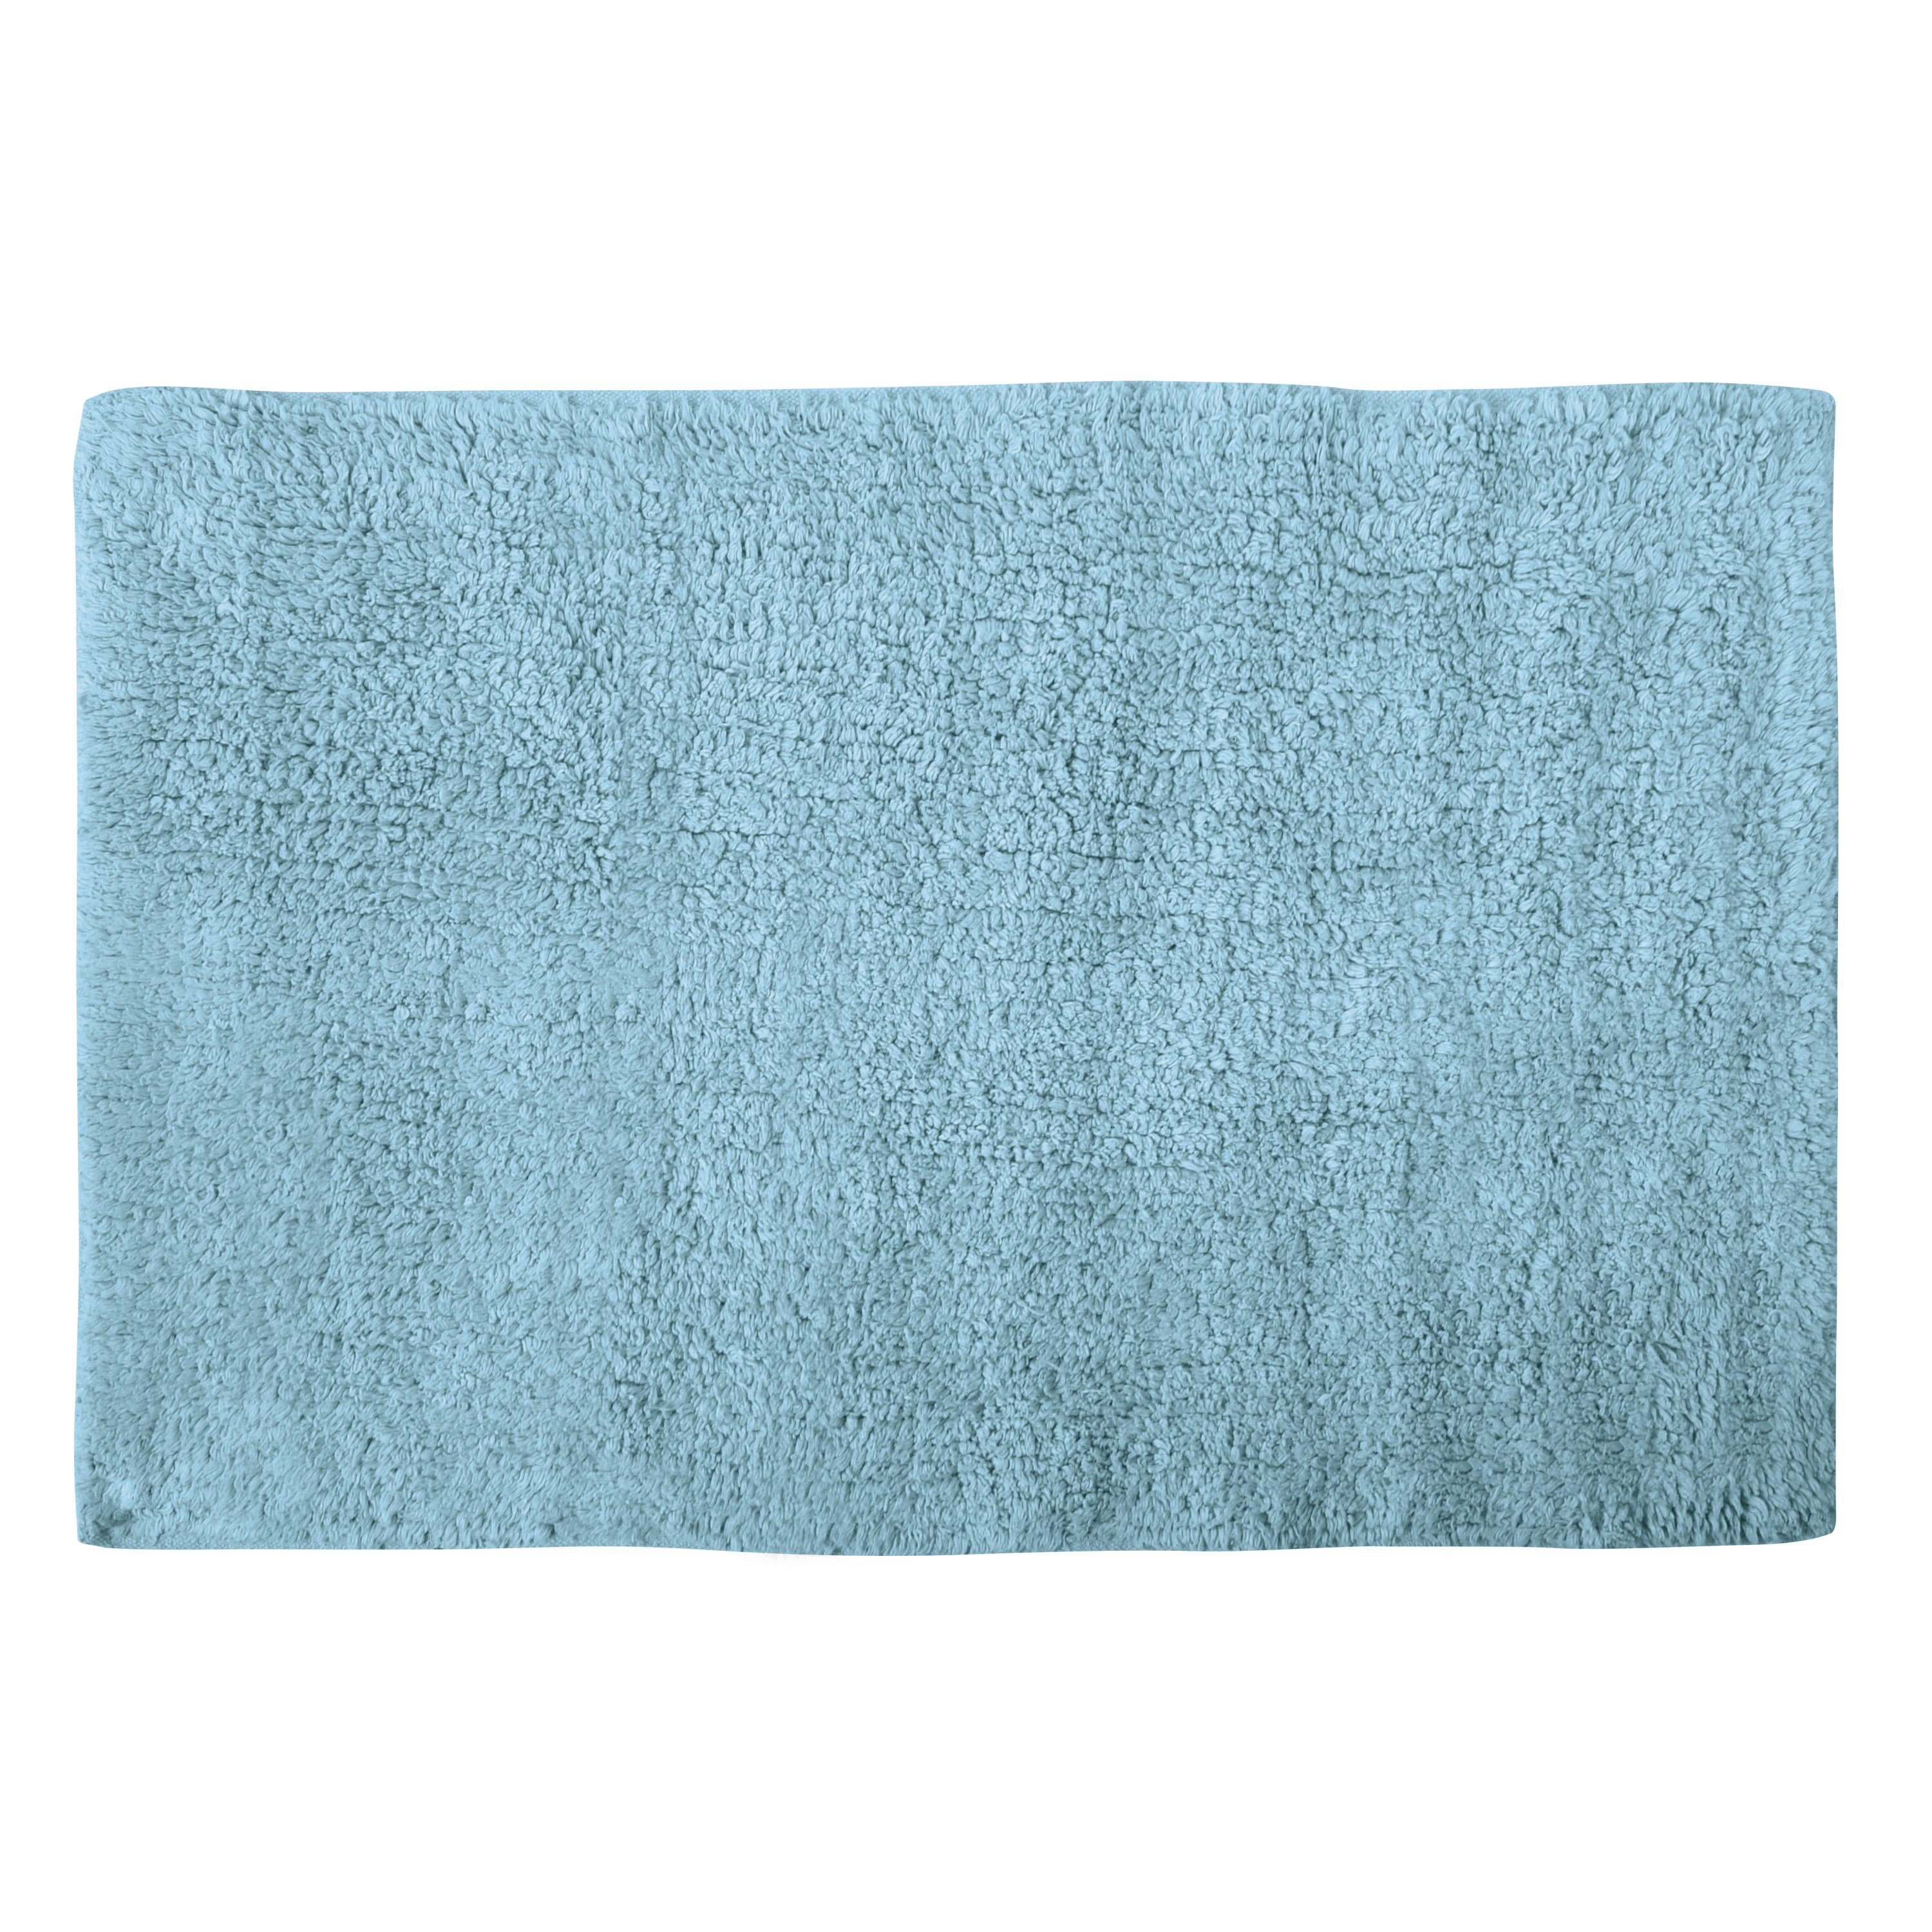 Badkamerkleedje-badmat tapijtje voor op de vloer lichtblauw 40 x 60 cm